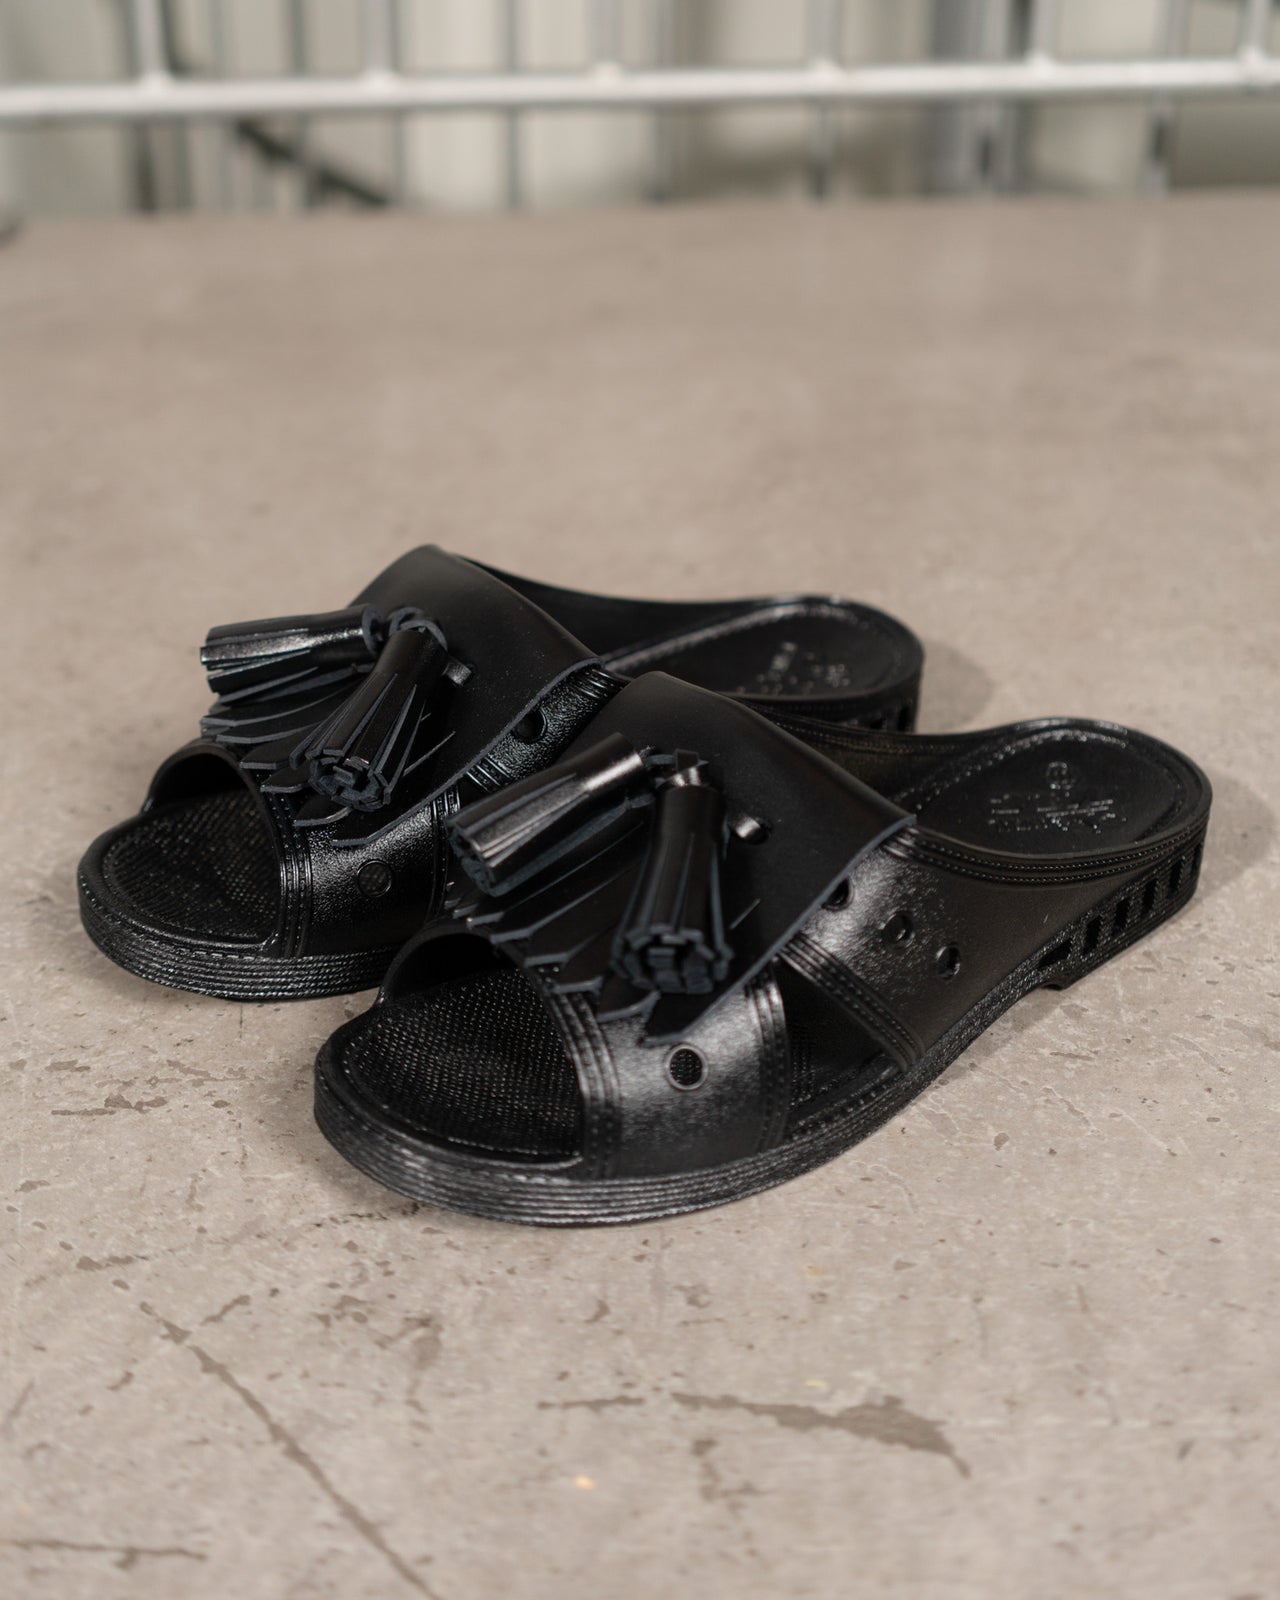 Bensan-D Tassle Sandals